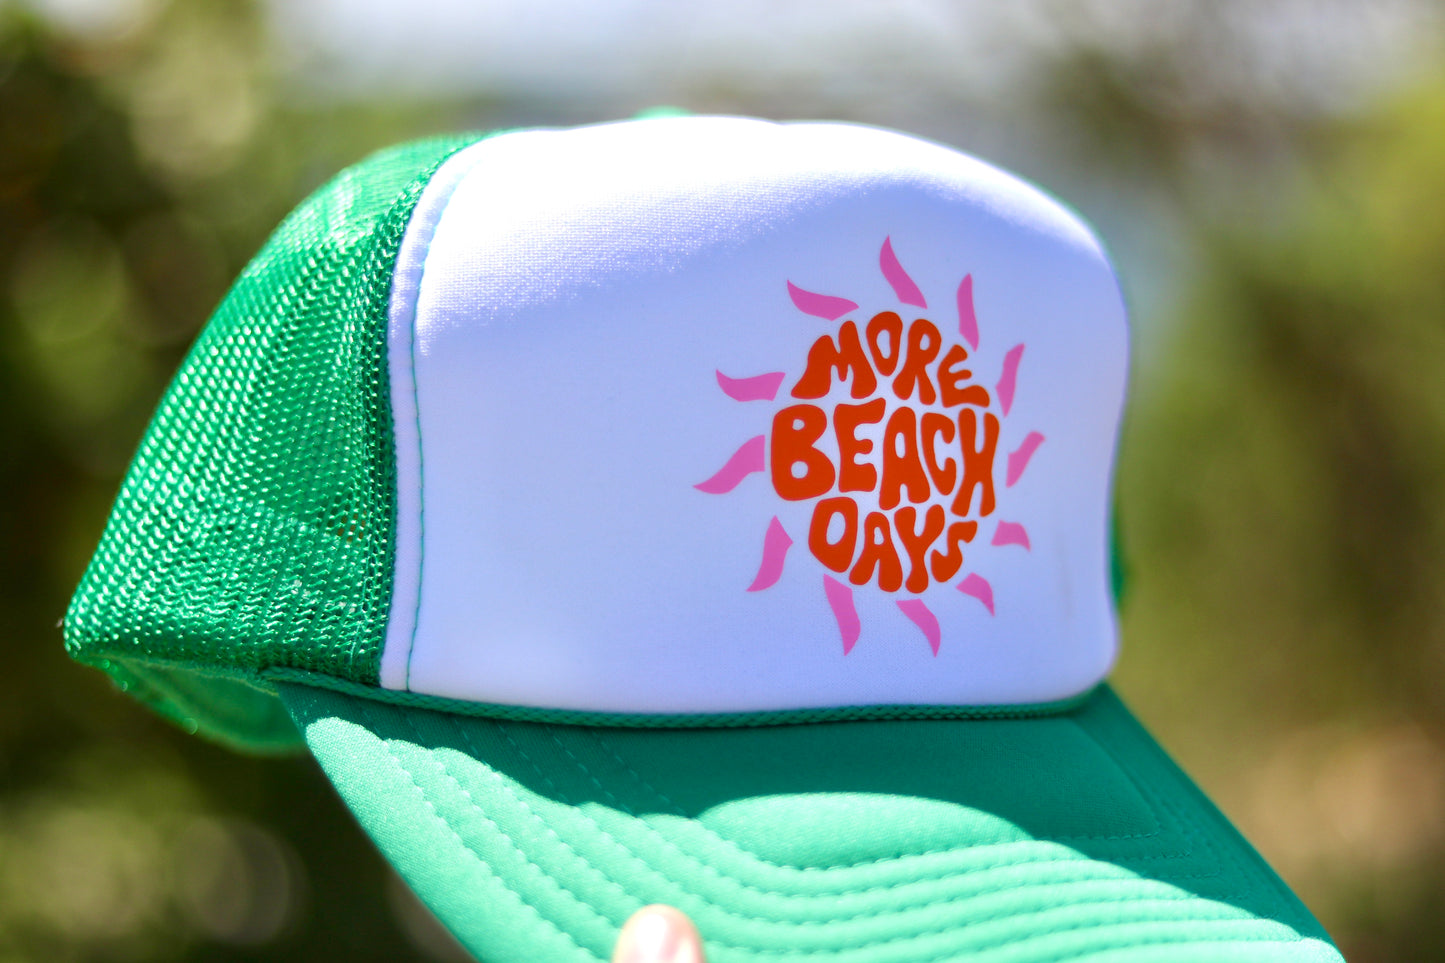 More Beach Days Trucker Hat